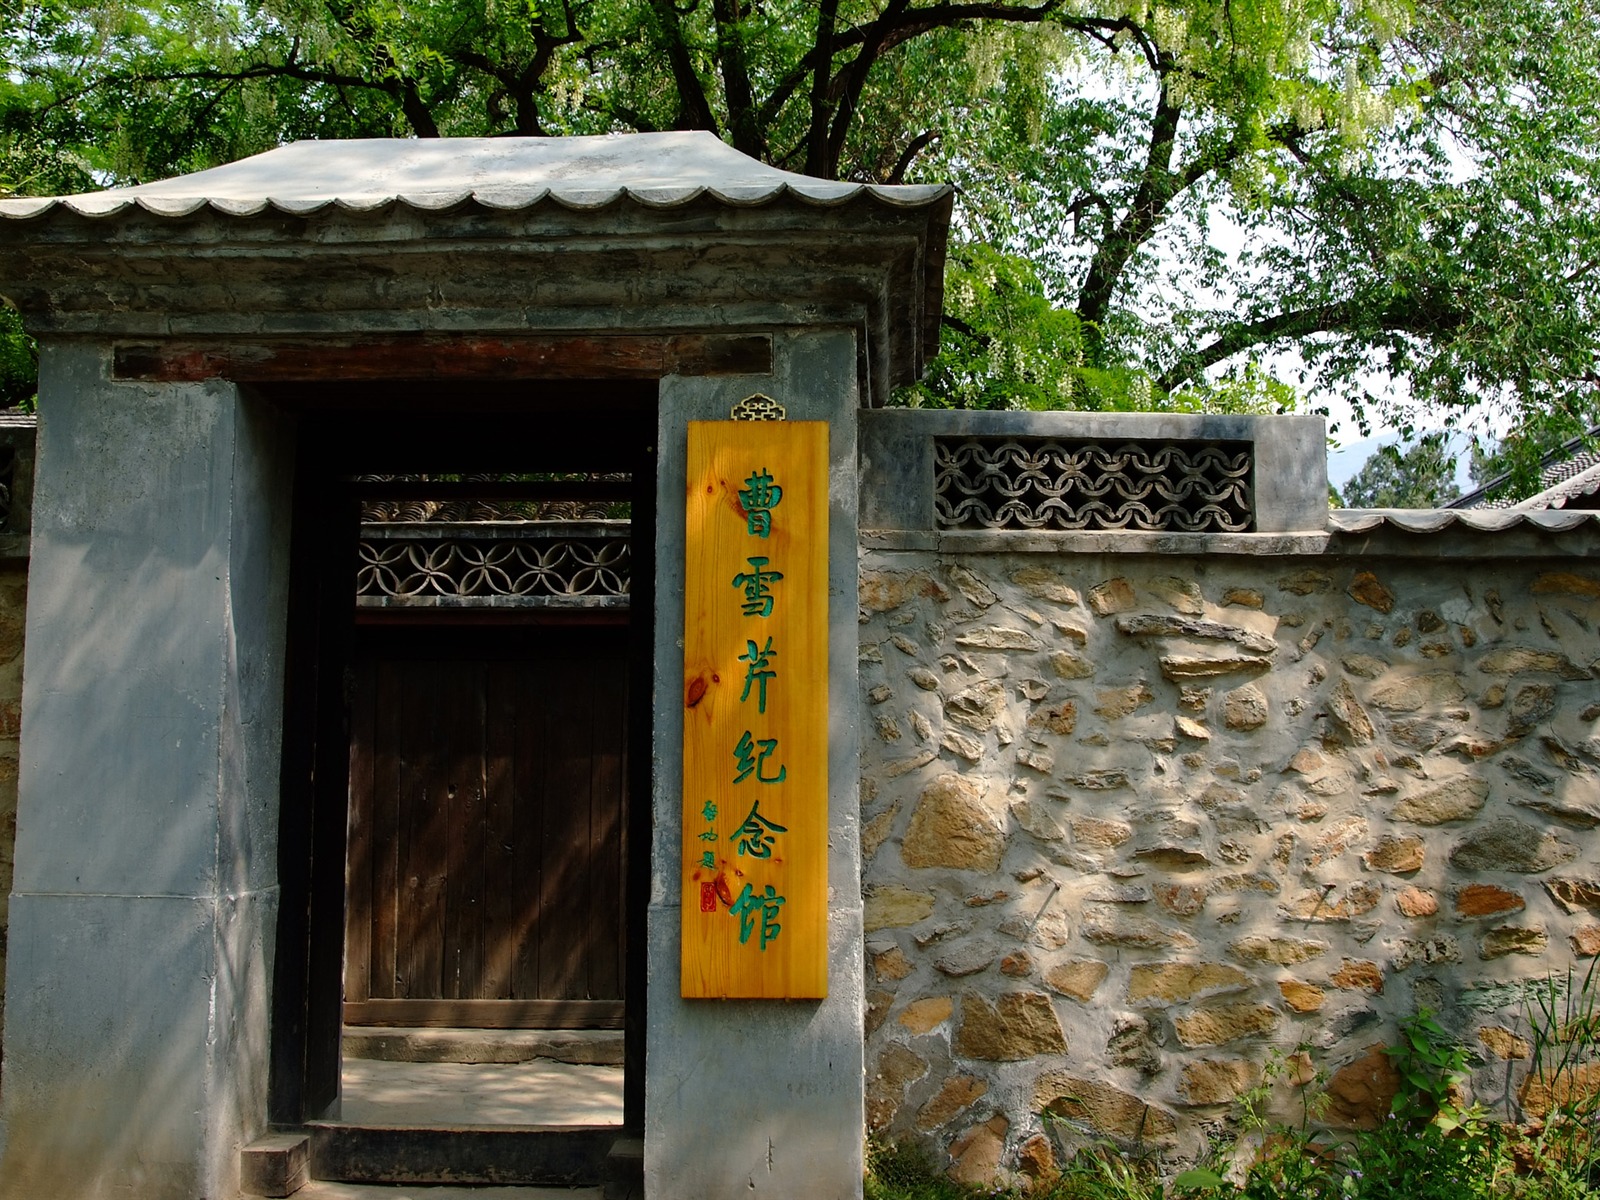 Xiangshan jardín principios del verano (obras barras de refuerzo) #17 - 1600x1200